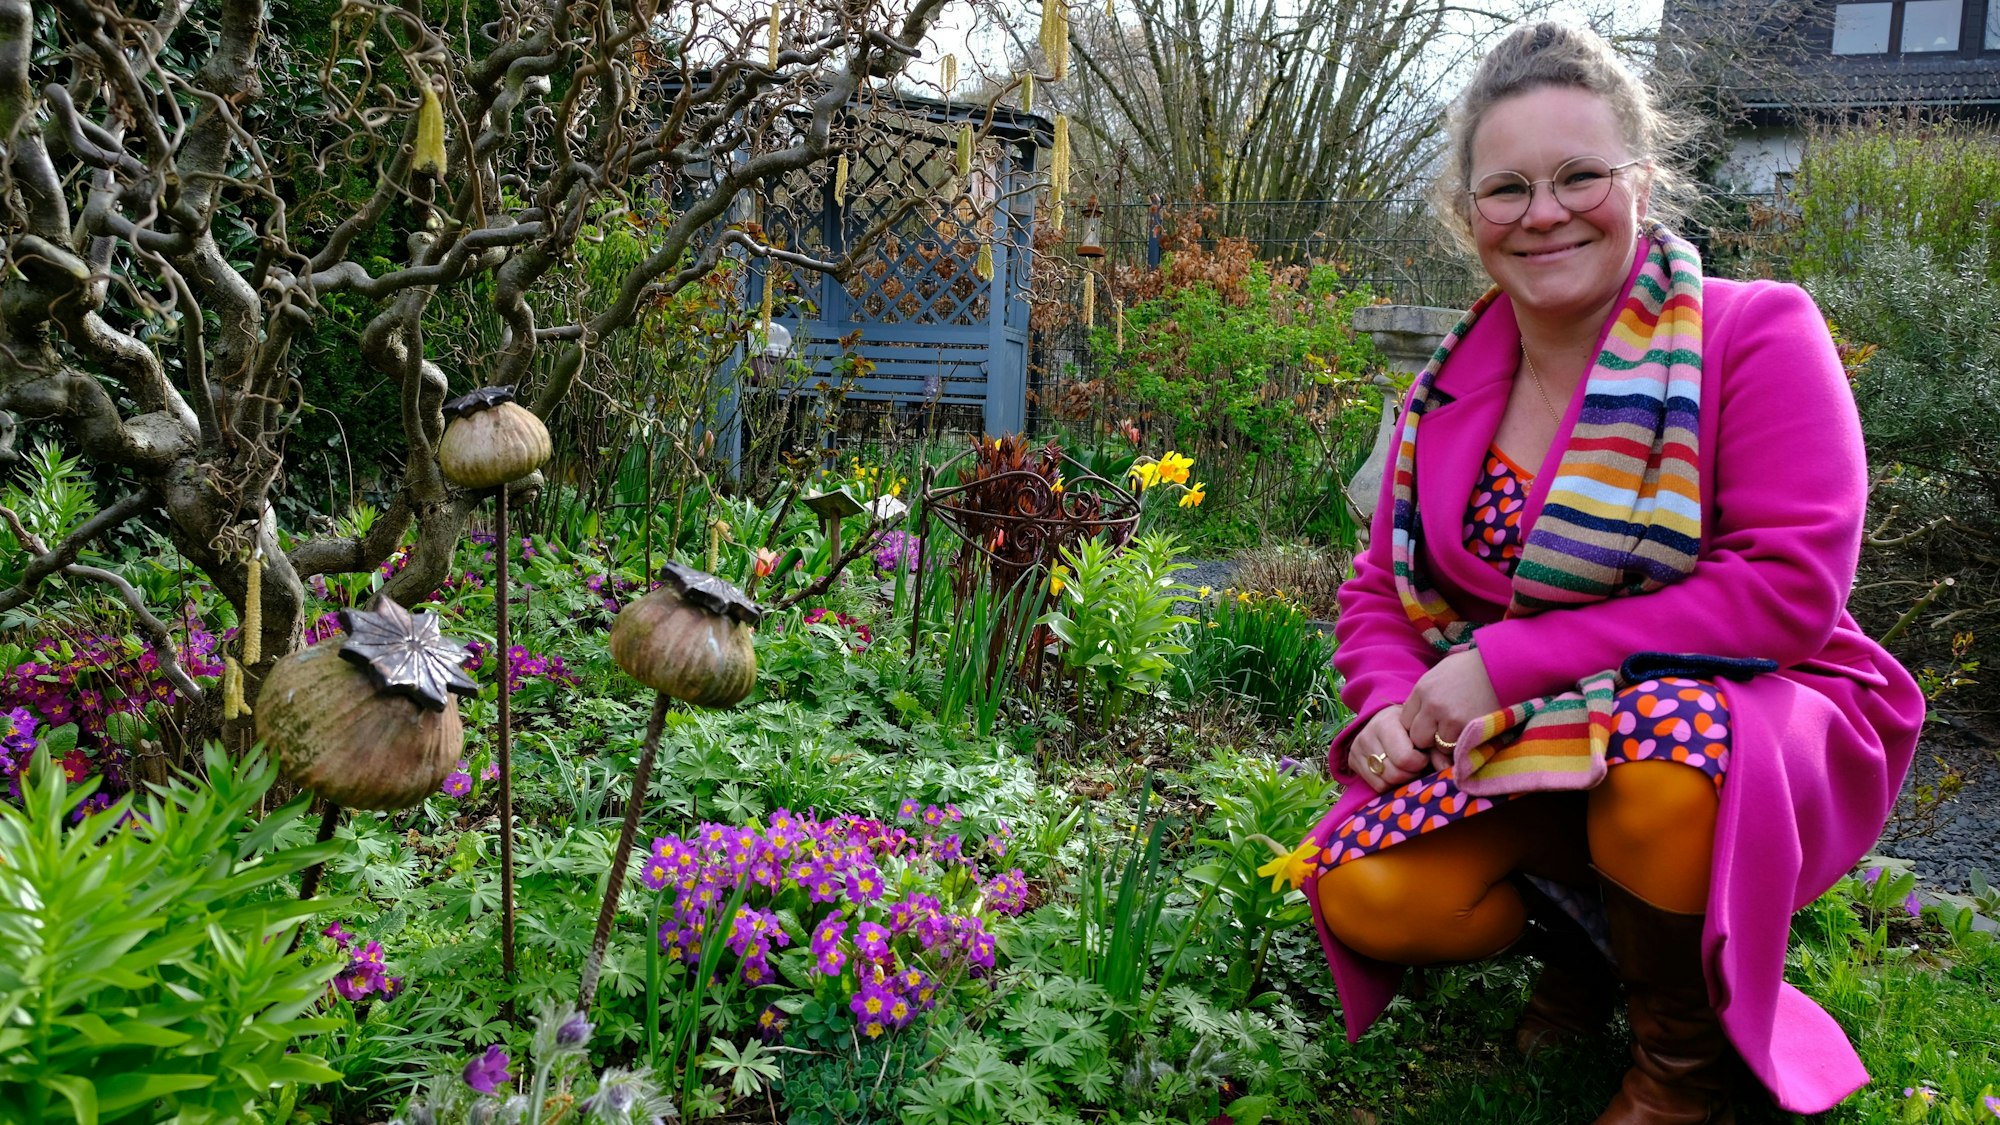 Kai Judith Wetzel kniet an einem Blumenbeet in ihrem Garten. Sie trägt einen pinkfarbenen Mantel, ein buntes Kleid und einen gestreiften Schal.